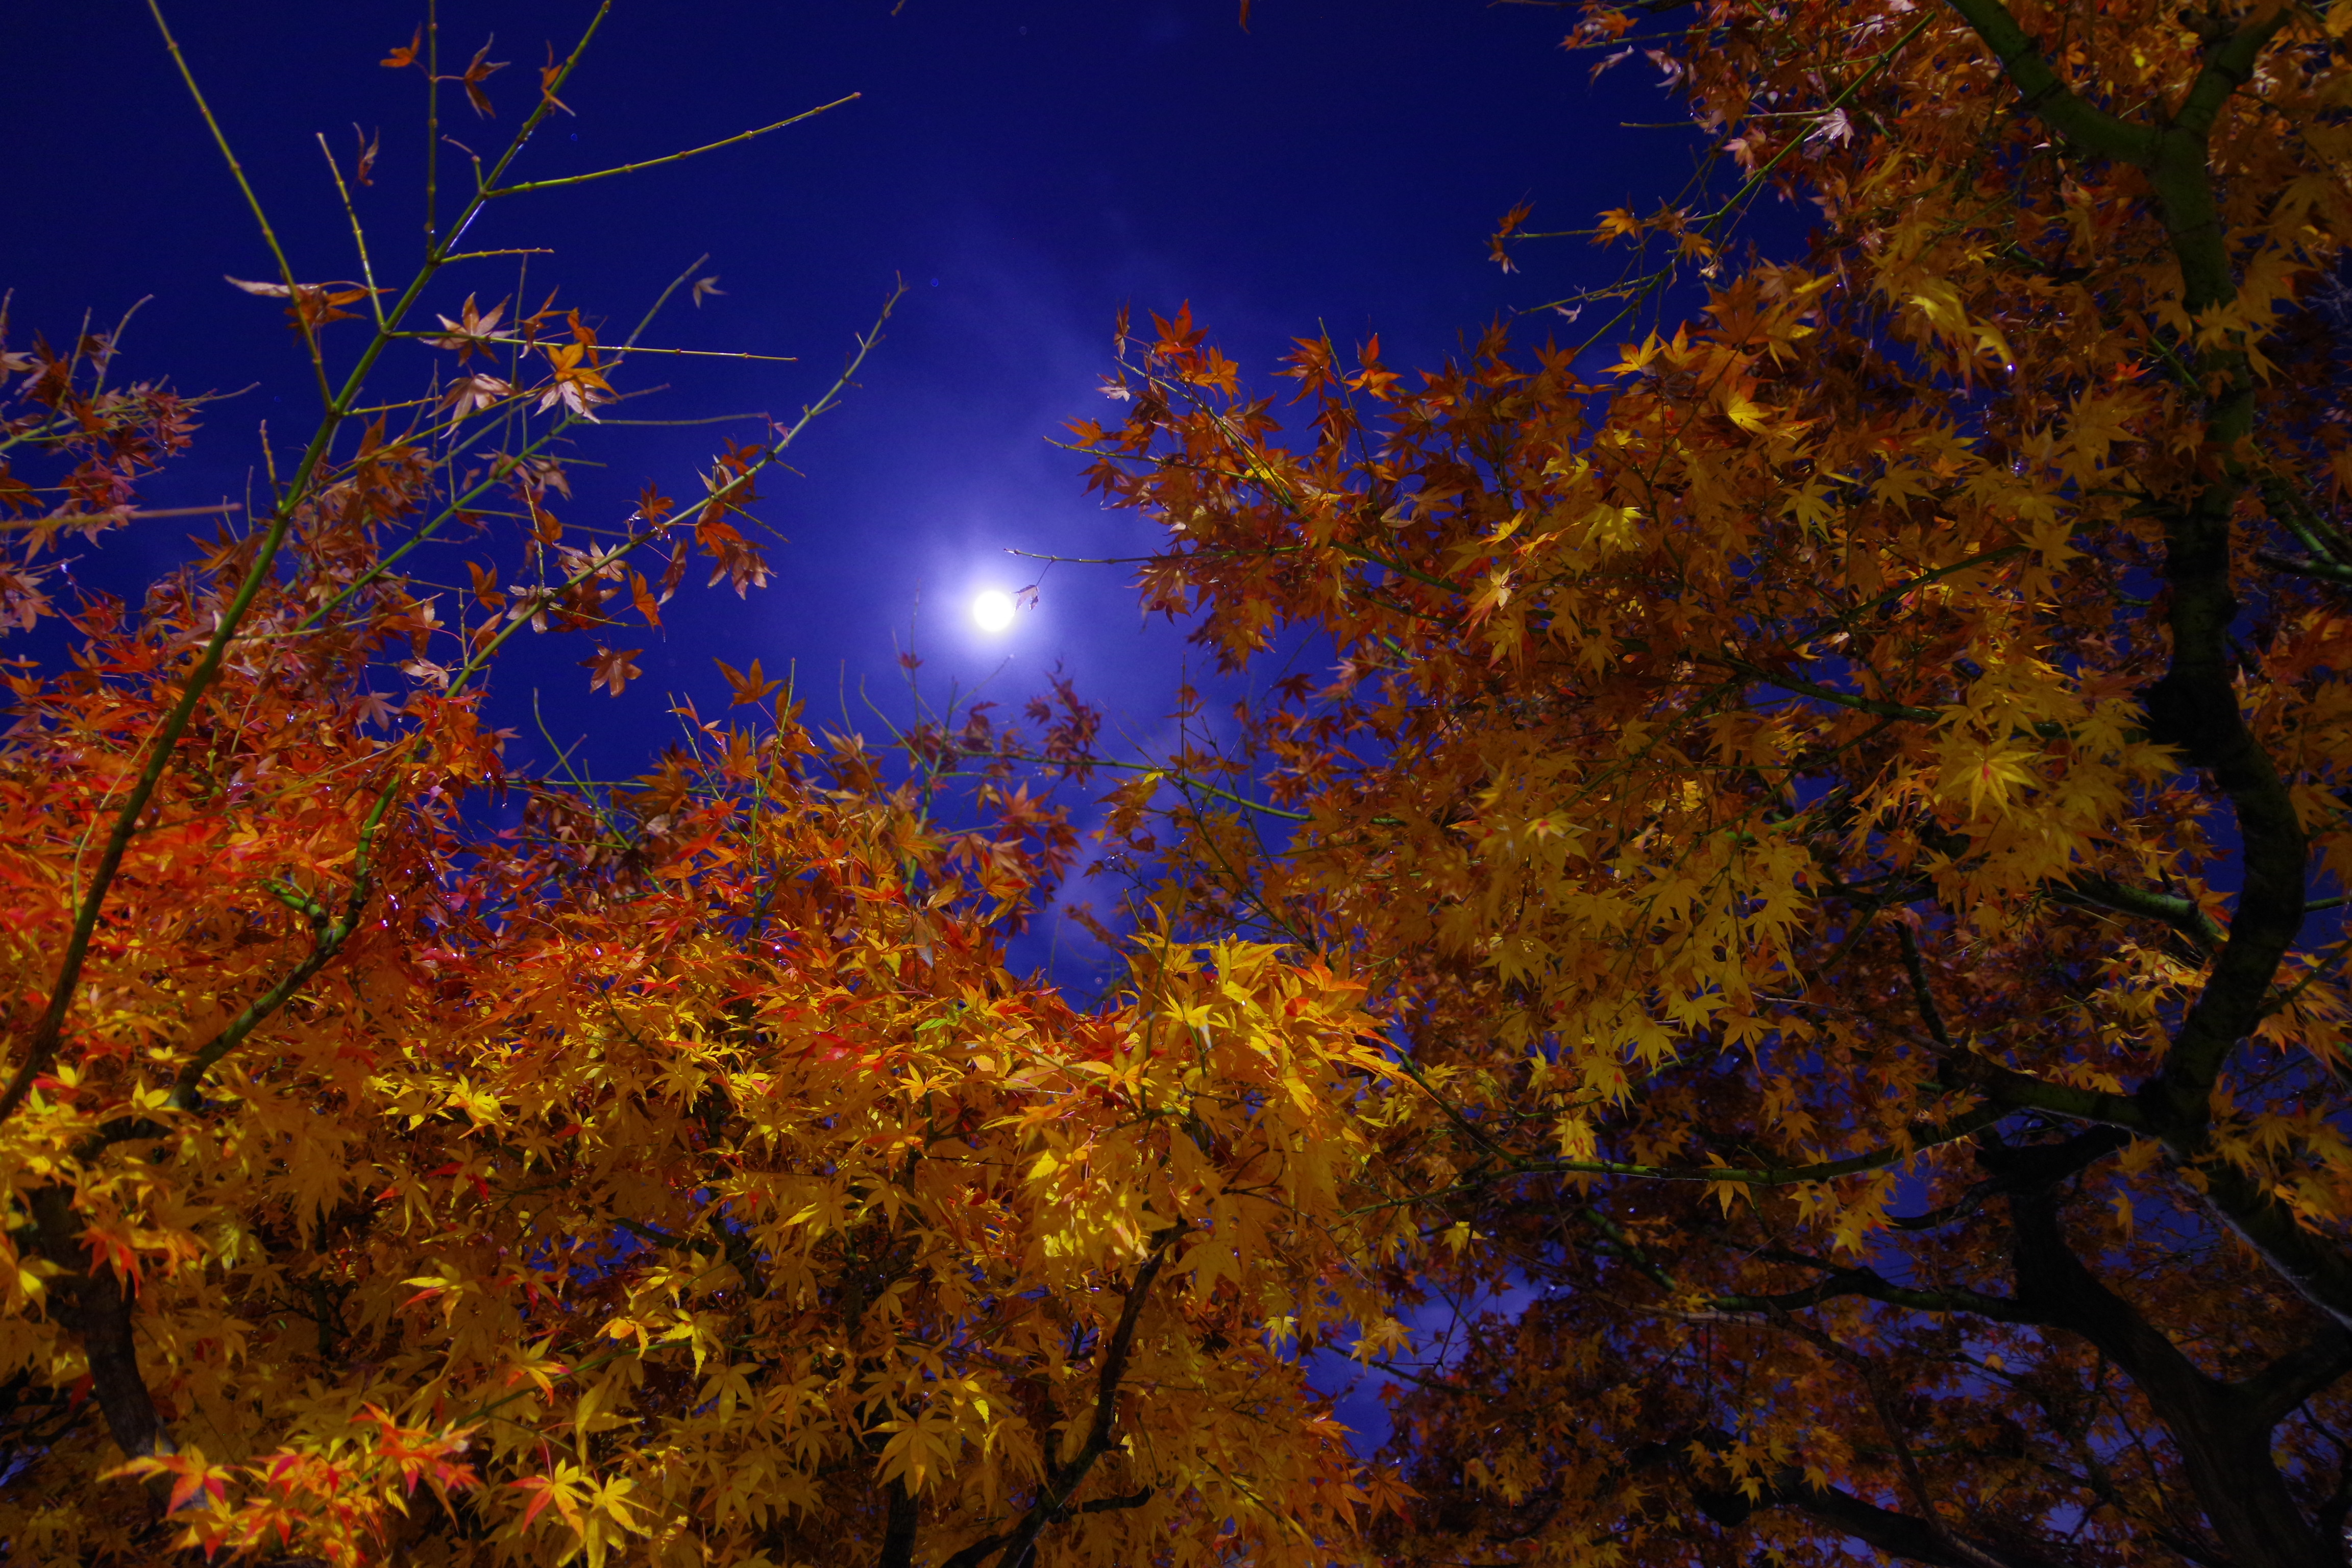 Autumn at night